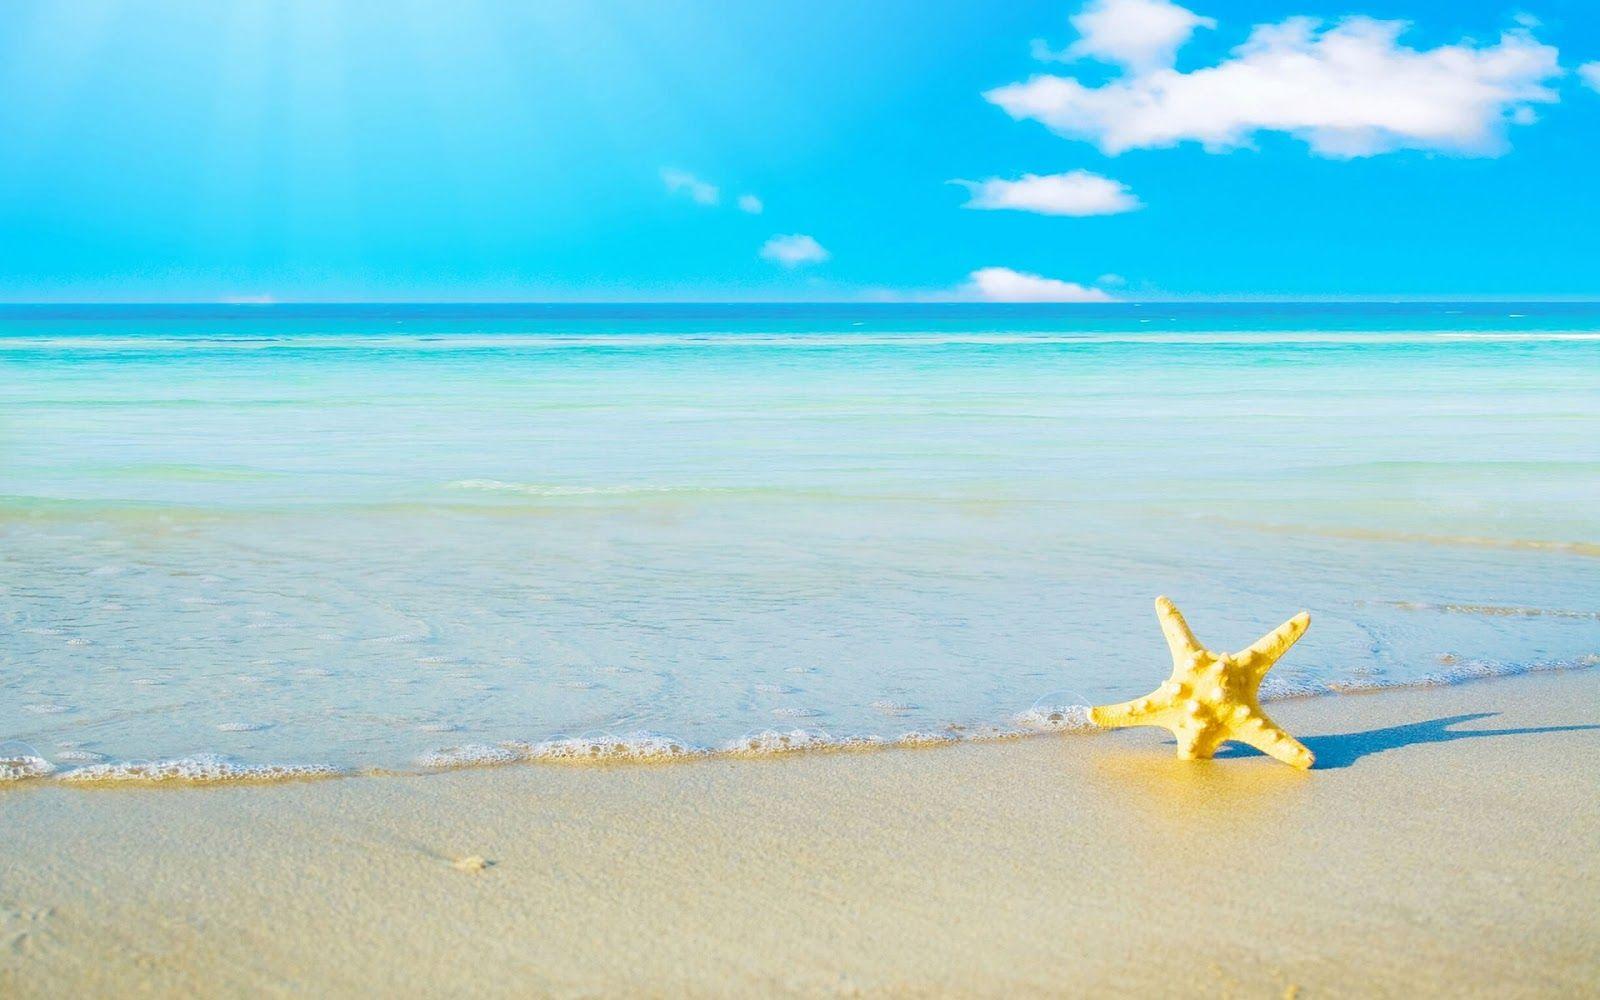 Đón hè với những bức ảnh nền máy tính từ Happy Summer Desktop Wallpapers! Bao gồm những hình ảnh đẹp lung linh về biển cát, ánh nắng và hoa tươi, chúng sẽ truyền tải tới bạn những cảm xúc tươi mới, vui tươi và đầy sống động. Hãy nhanh tay tải về cho thiết bị của bạn và tận hưởng mùa hè đáng nhớ này.